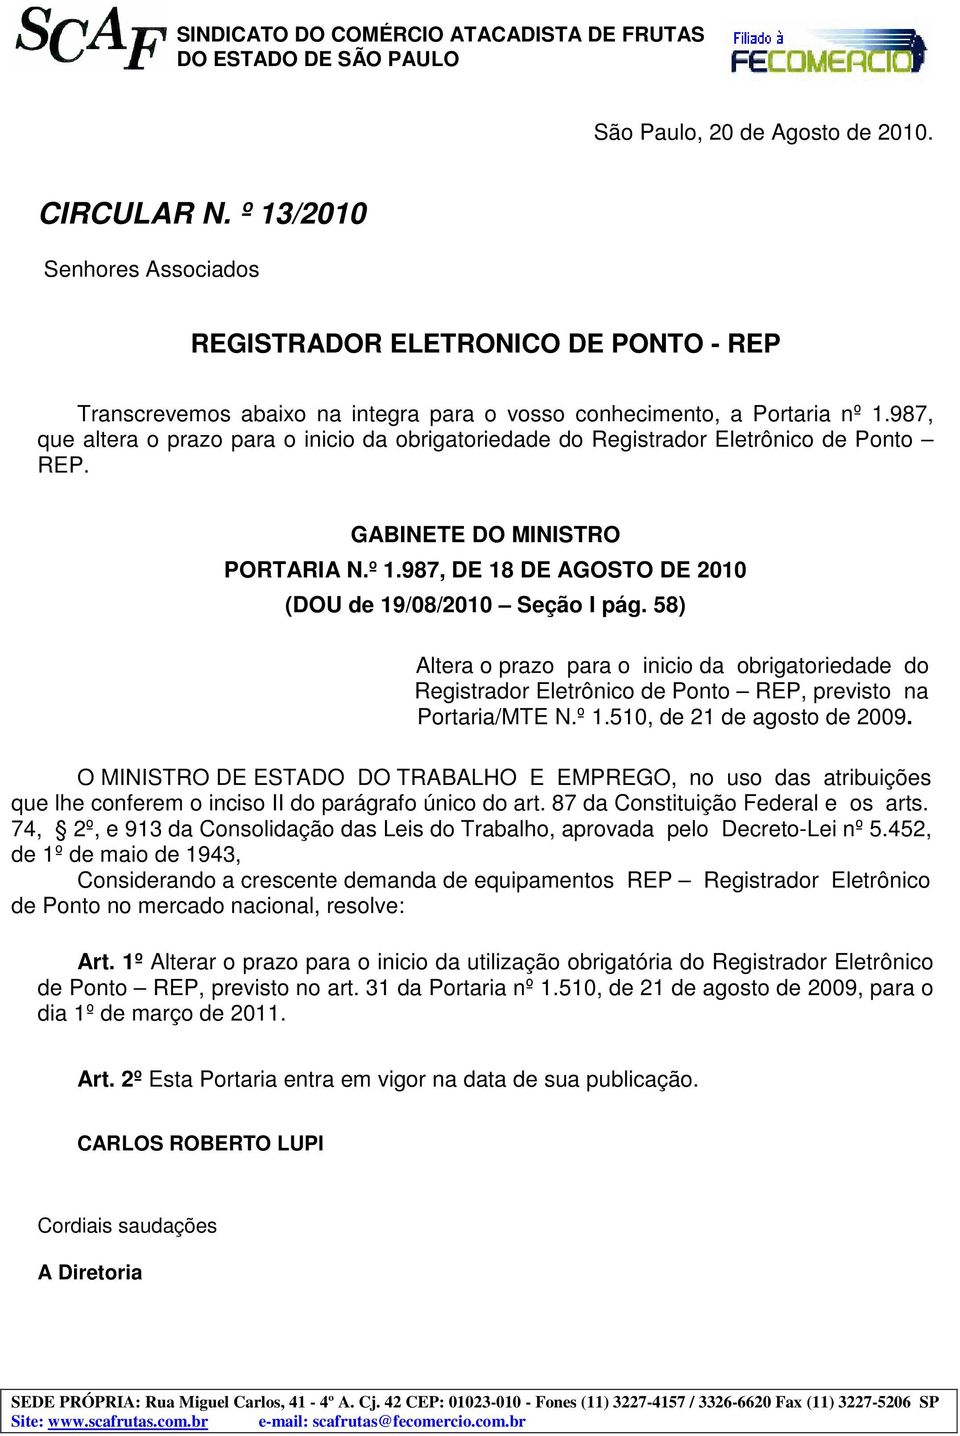 58) Altera o prazo para o inicio da obrigatoriedade do Registrador Eletrônico de Ponto REP, previsto na Portaria/MTE N.º 1.510, de 21 de agosto de 2009.